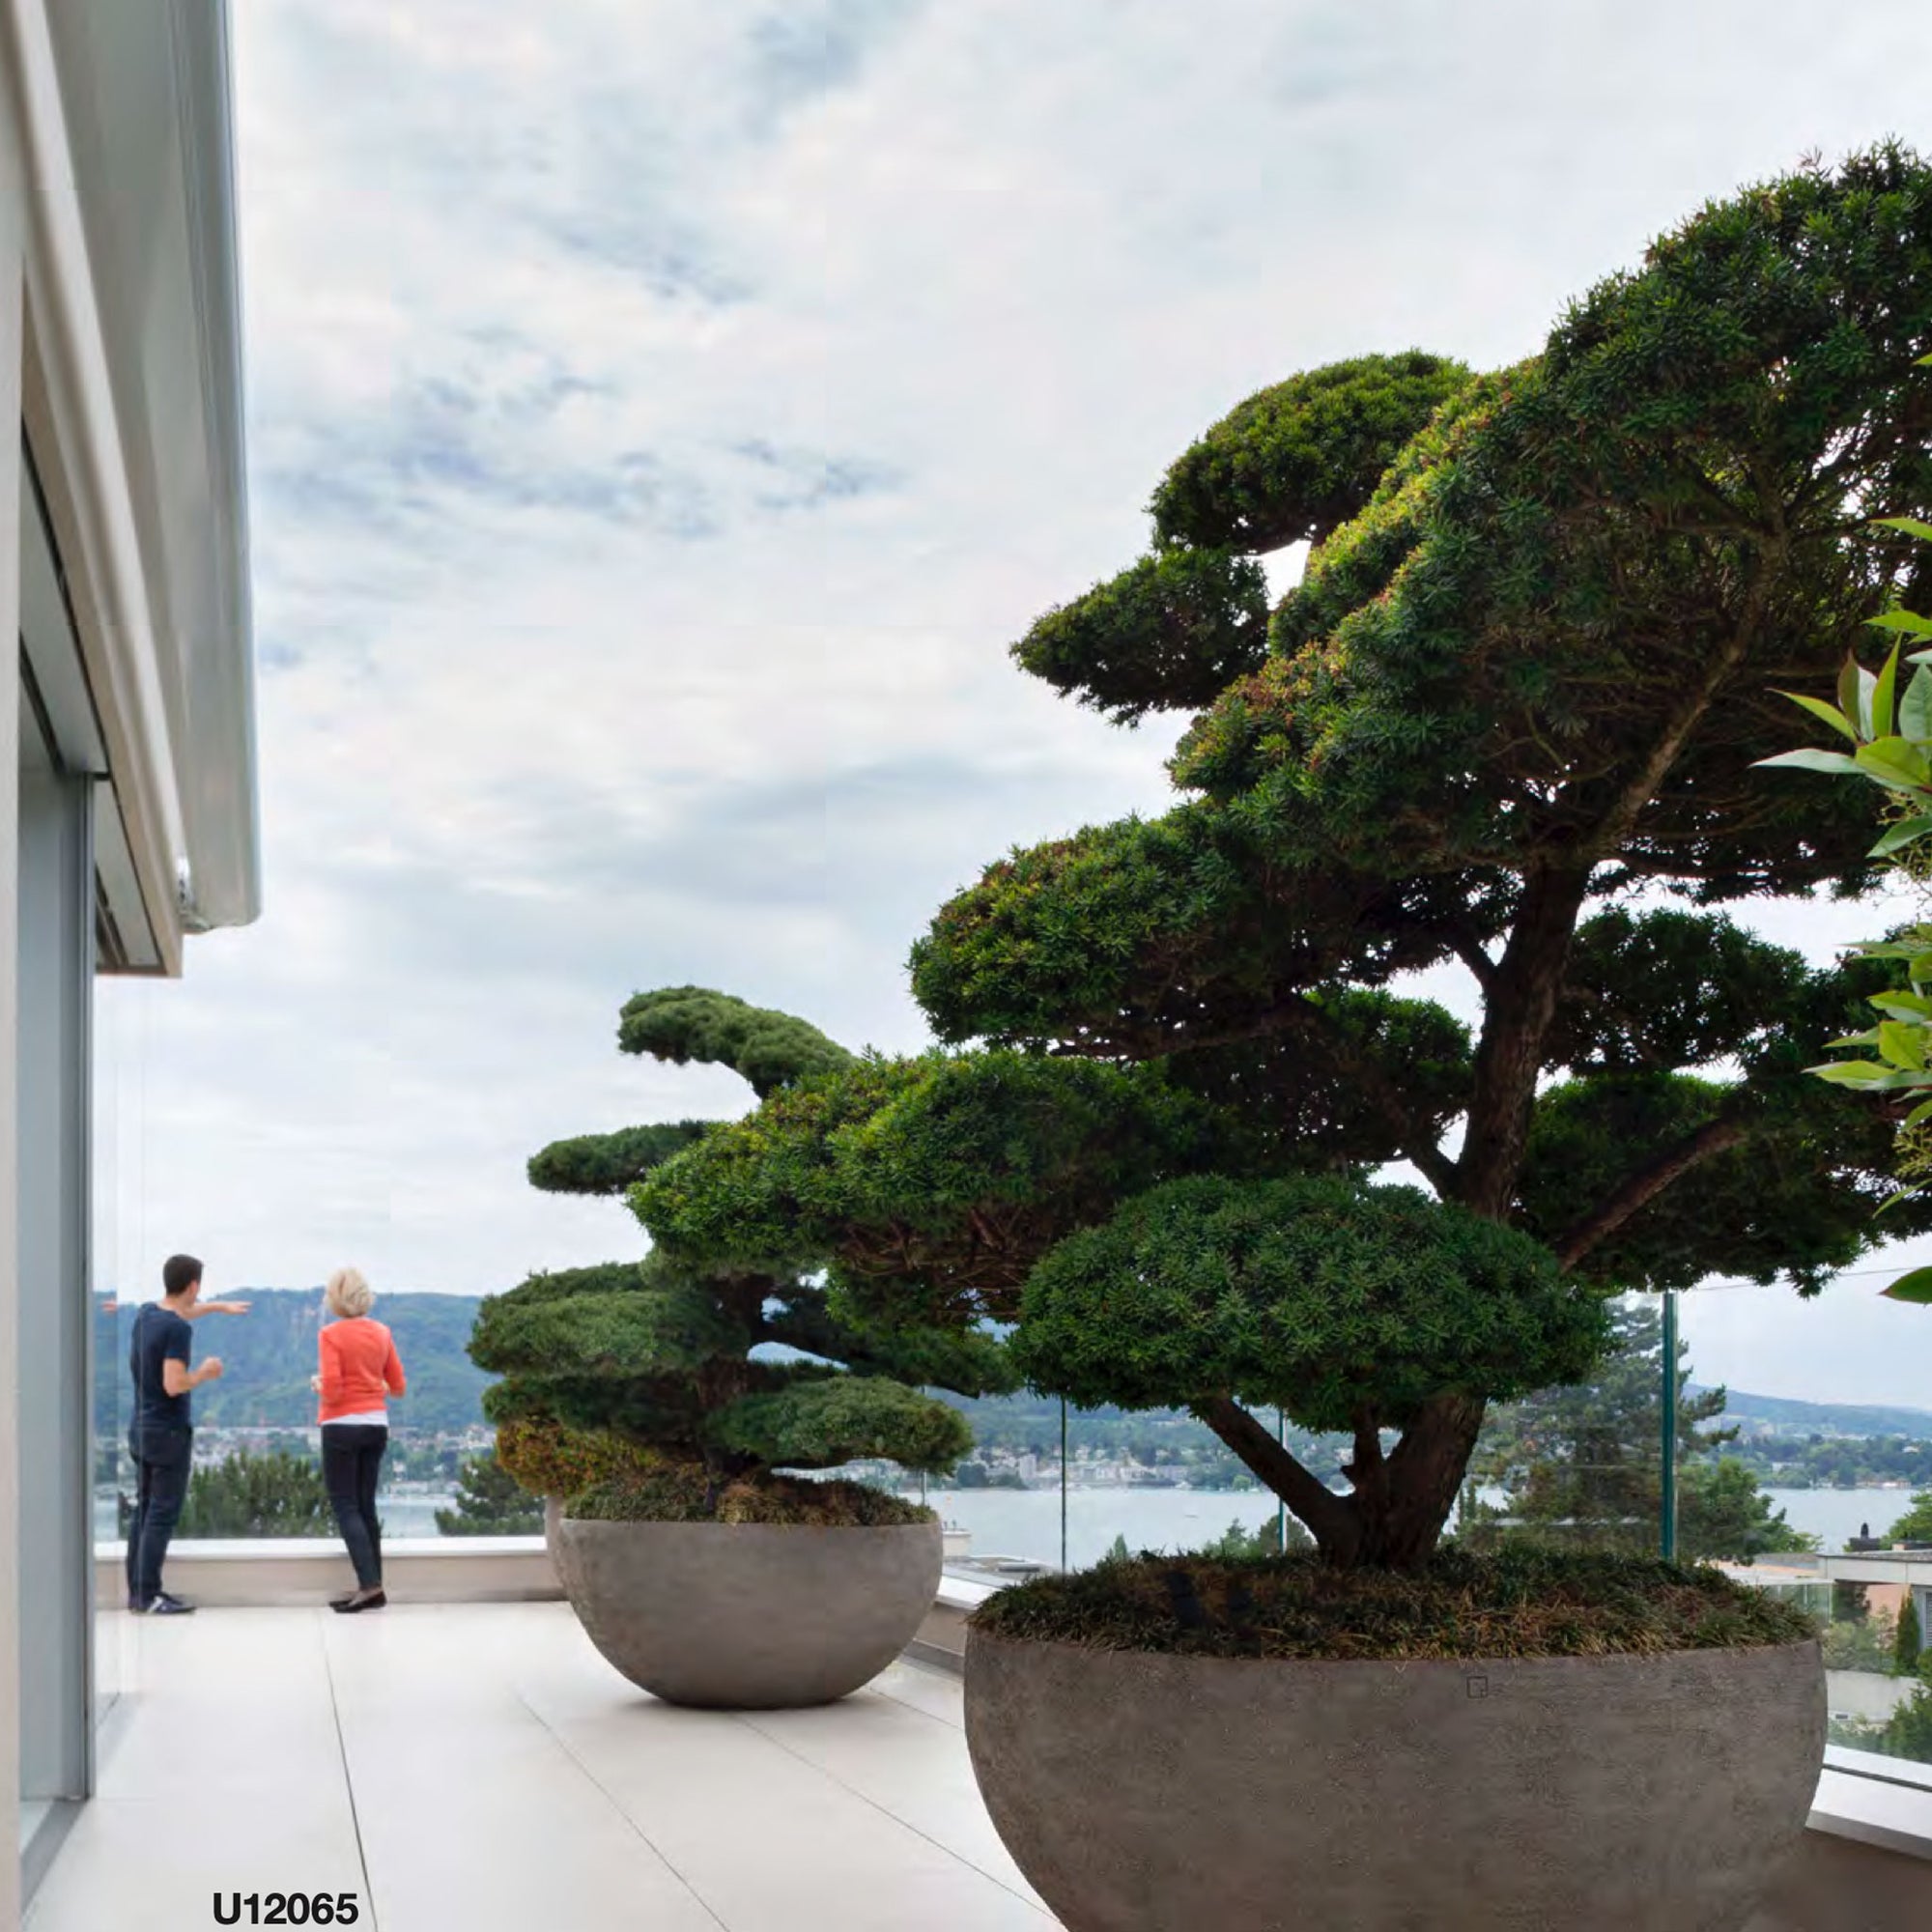 Zwei Atelier Vierkant Gefäße U12065 in grau mit jeweils einem Bonsai bepflanzt , stehen auf einer Dachterrasse mit weißen Fliesen.